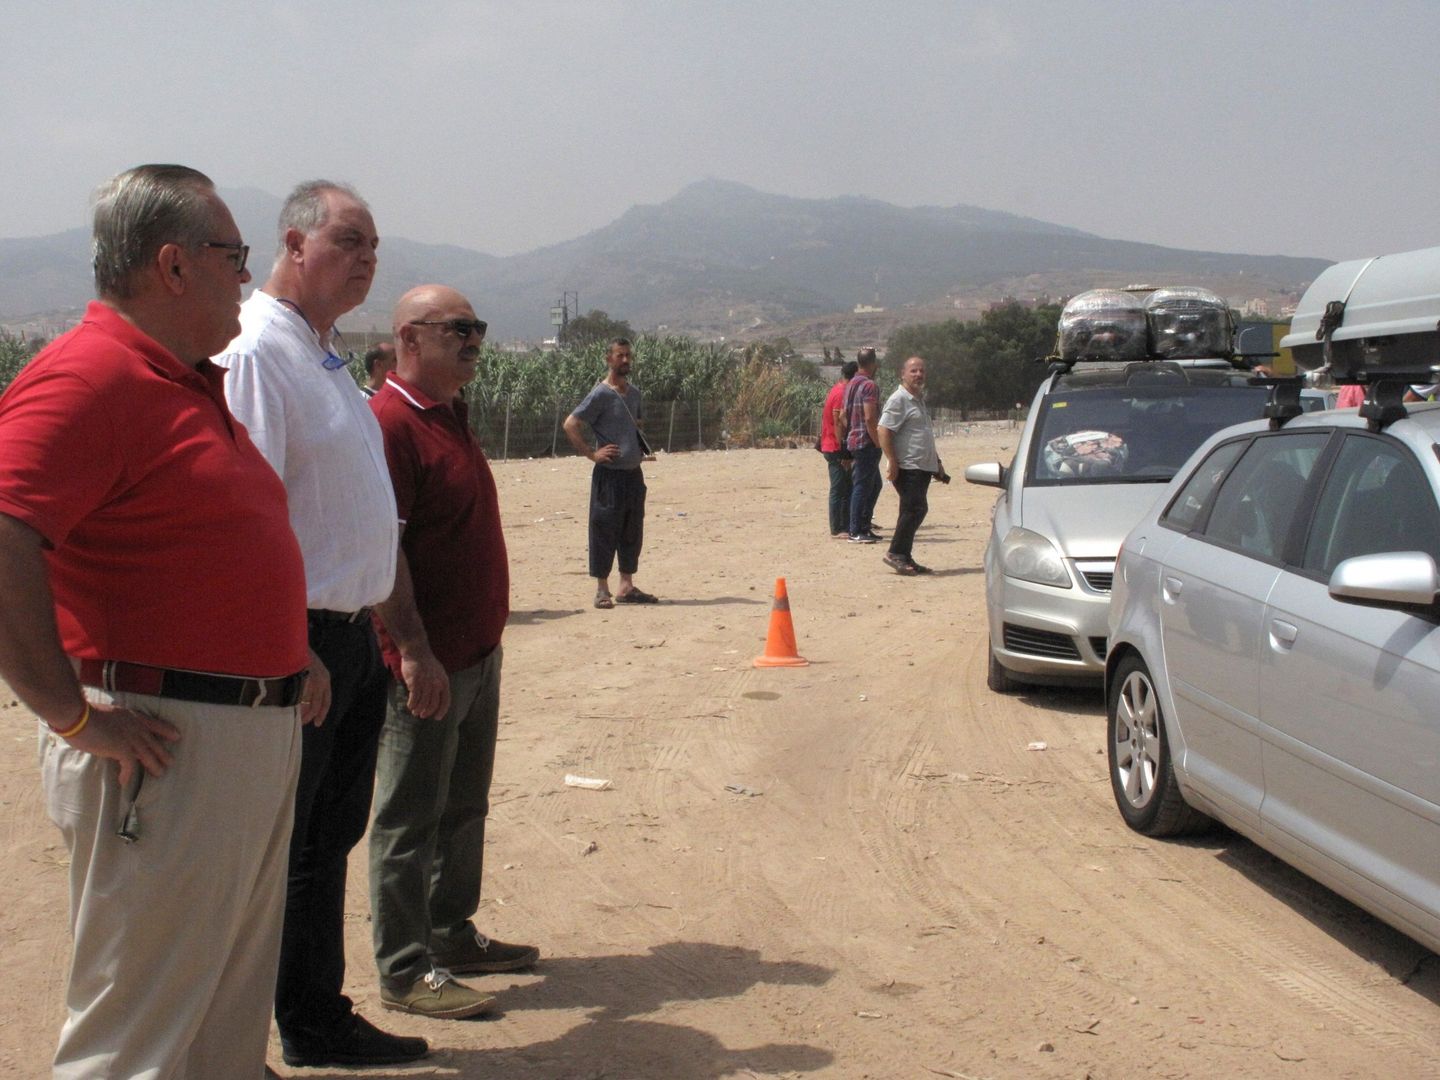 El presidente de Vox Melilla, Jesús Delgado Aboy (segundo por la izquierda), observa los vehículos que aguardan ante la frontera de Melilla con Marruecos. (EFE)